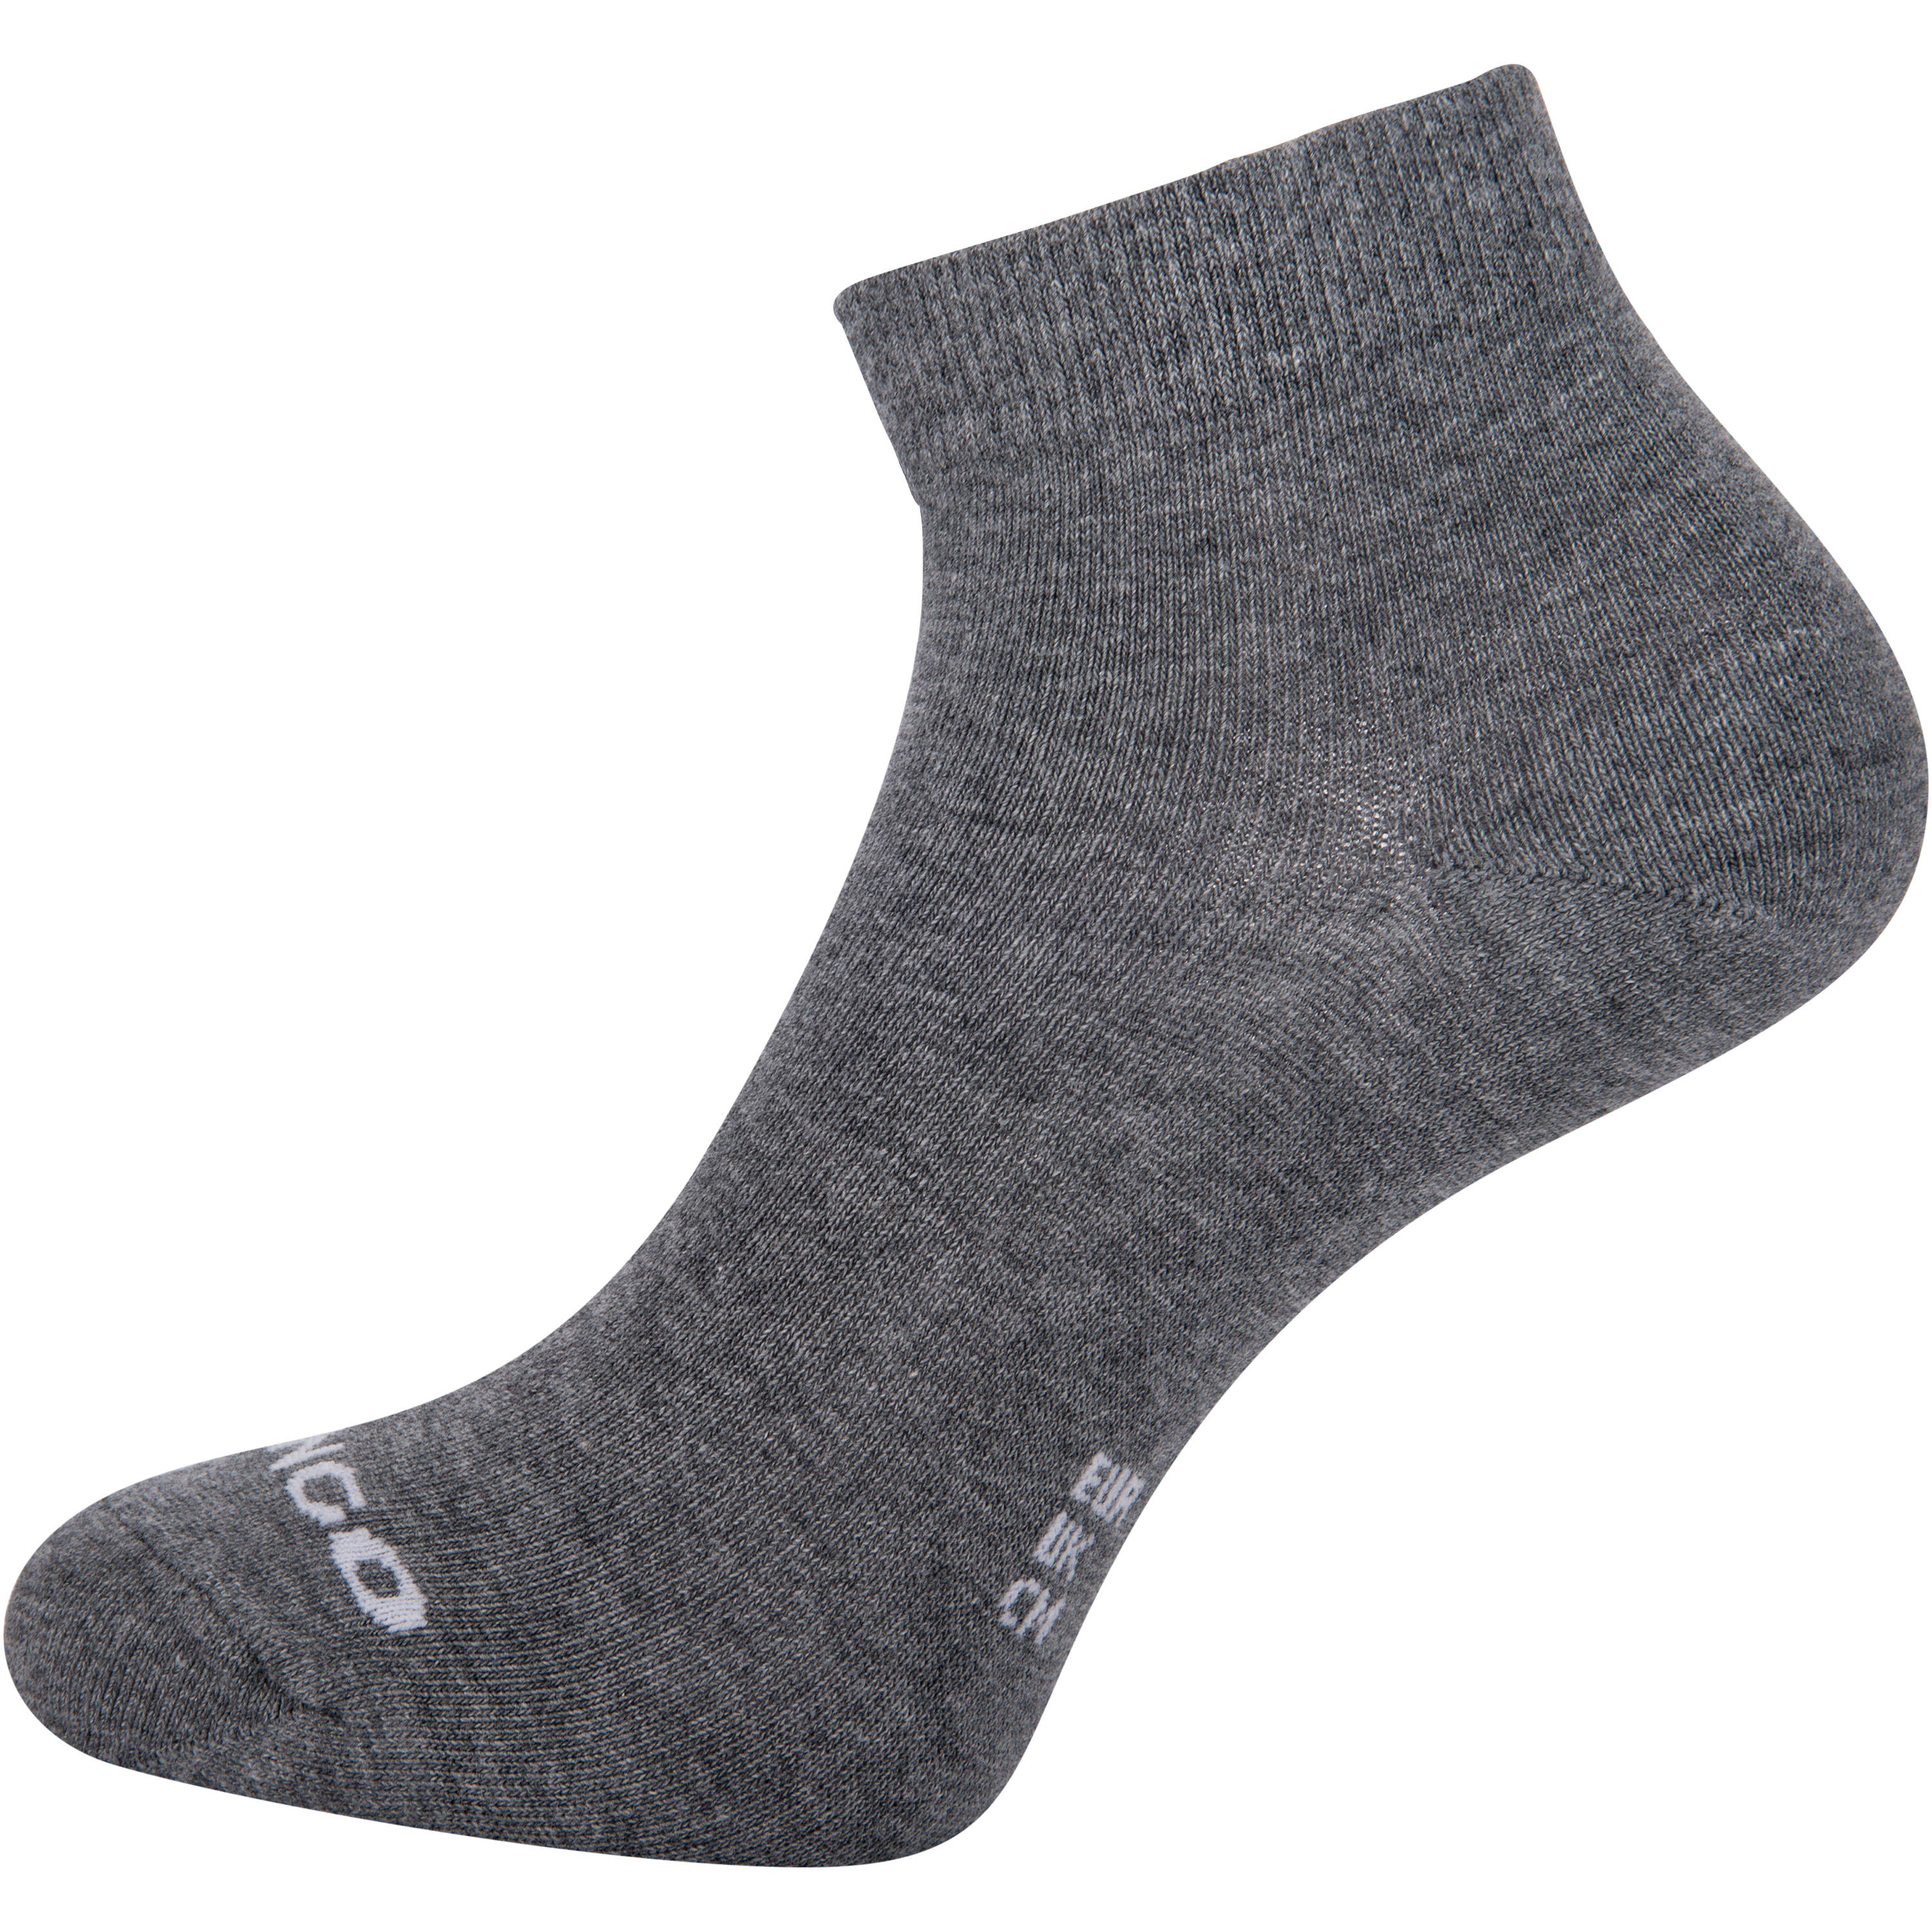 RS 160 Adult Mid Sports Socks Tri-Pack - Dark Grey 8/9